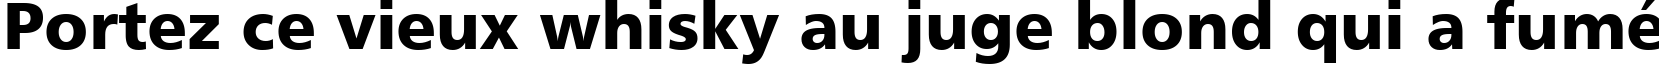 Пример написания шрифтом font315 текста на французском